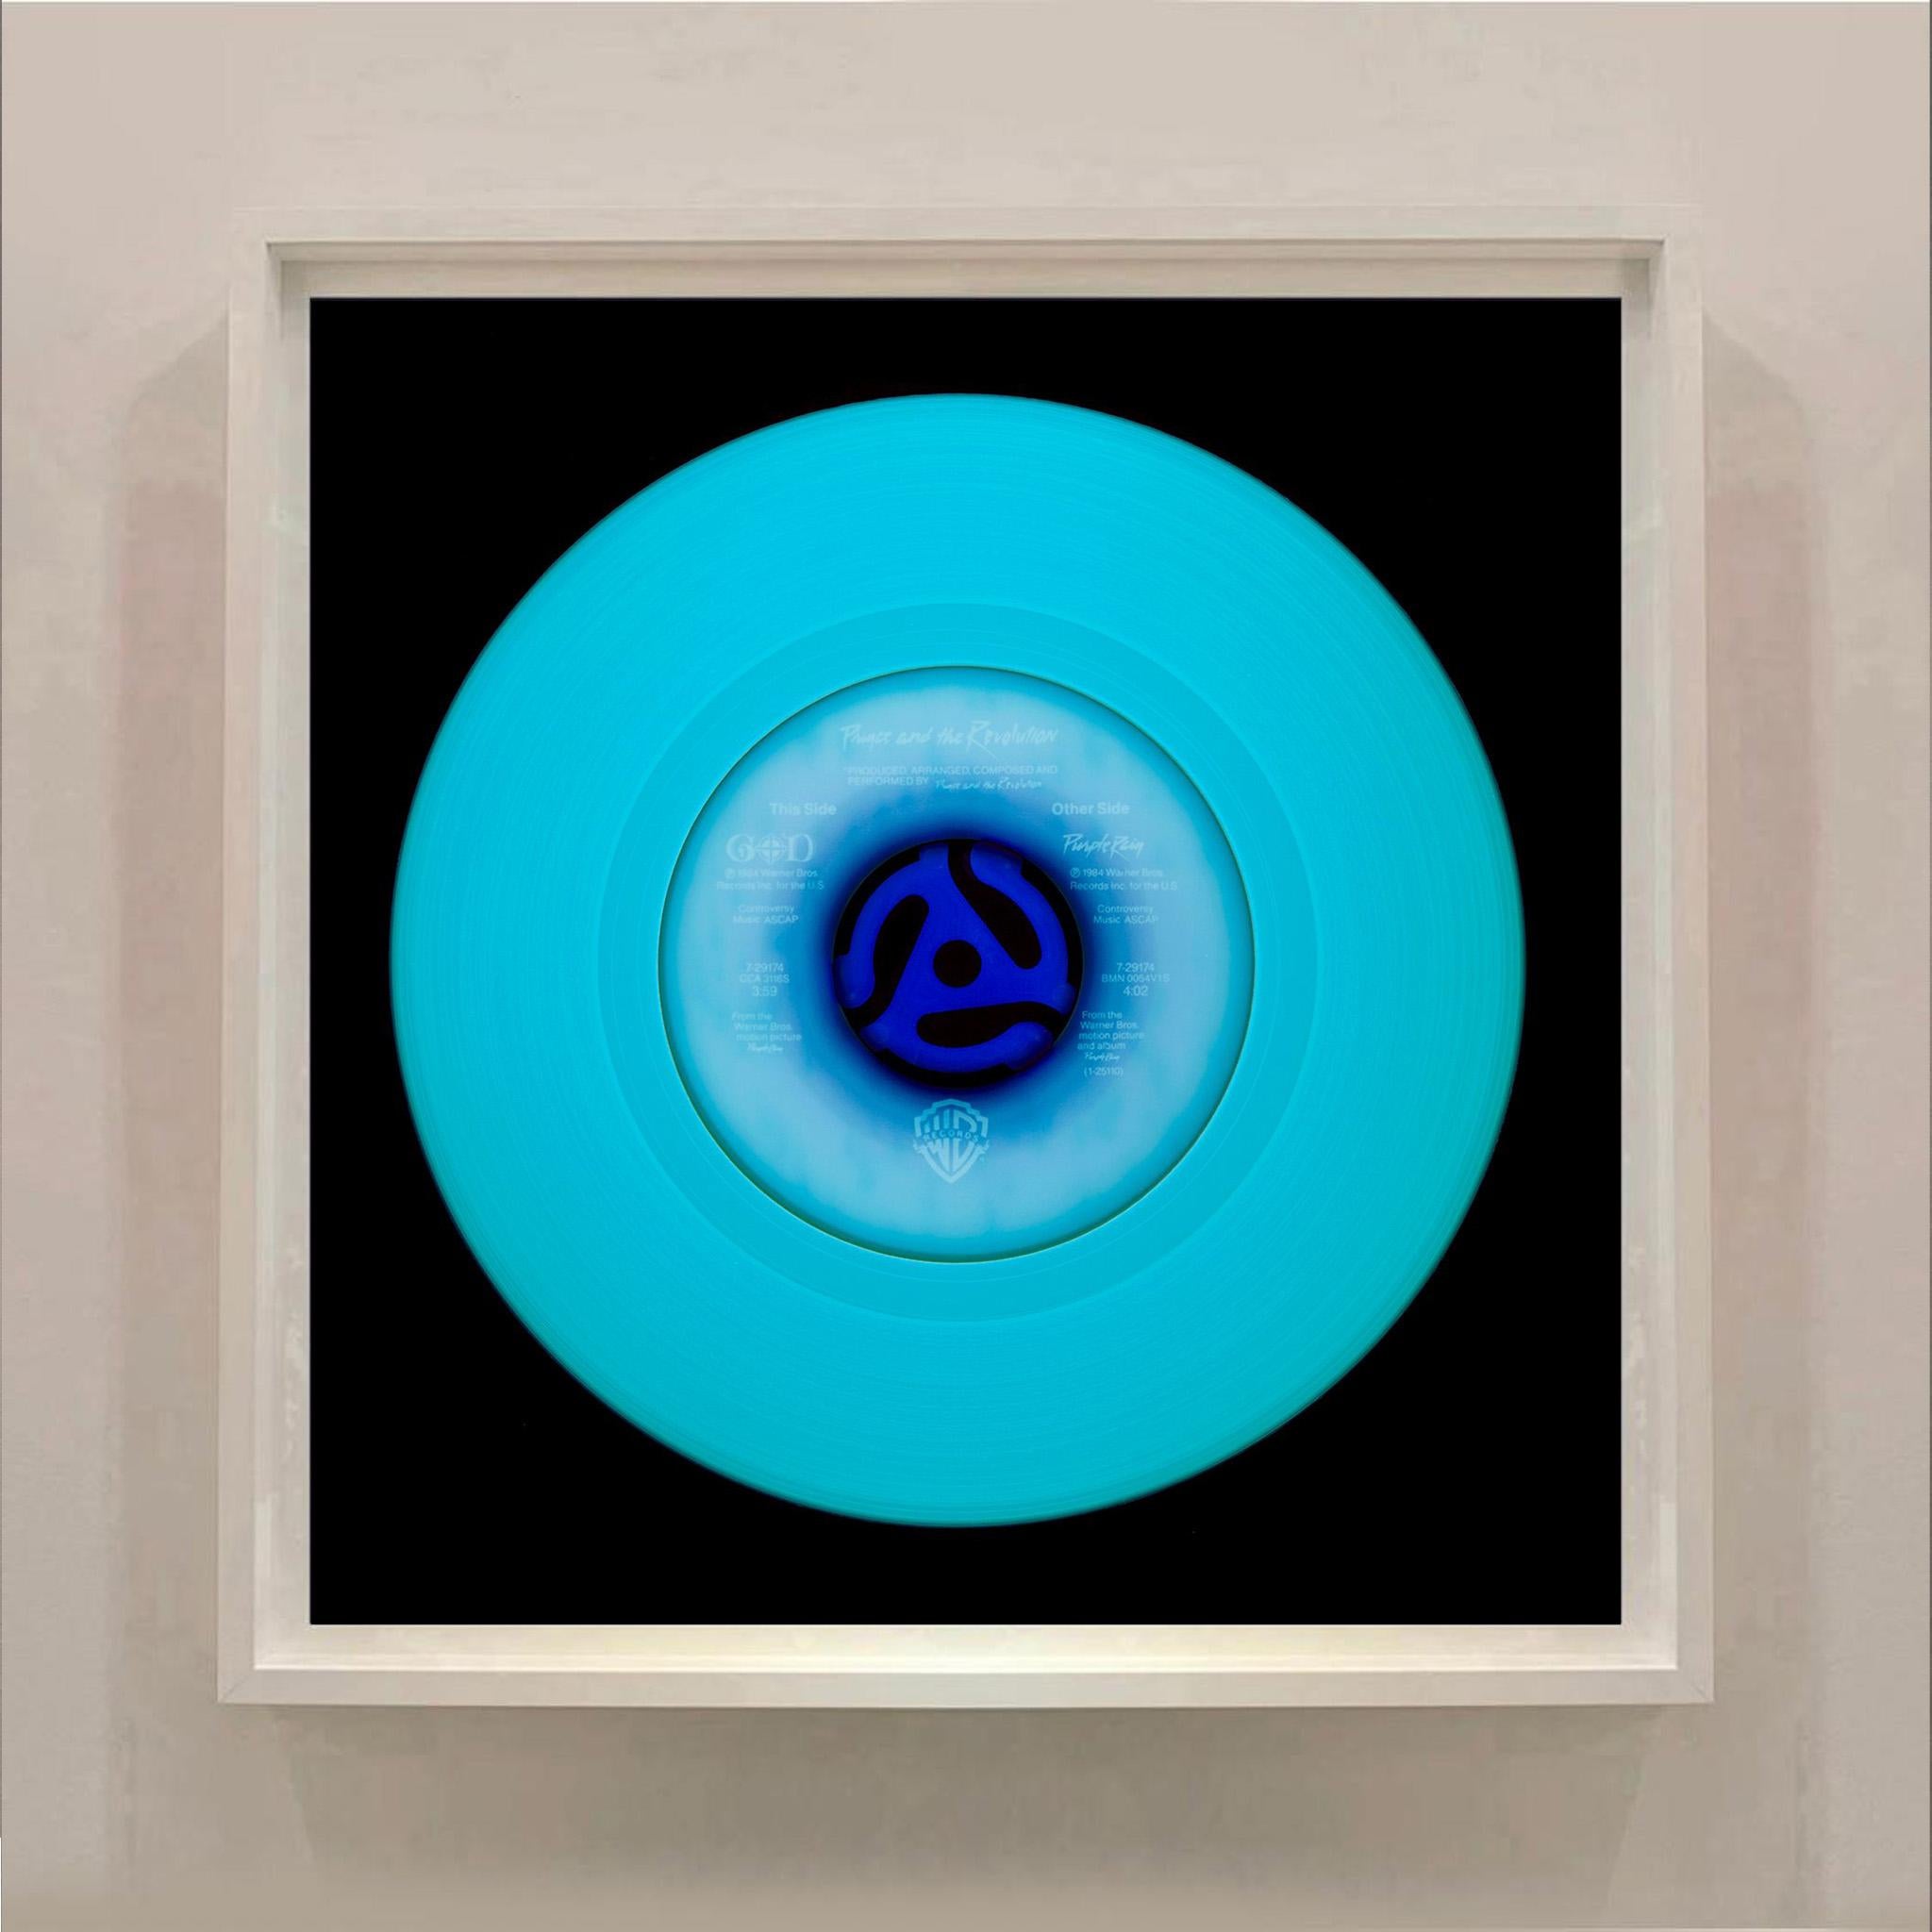 Vinyl-Kollektion, Other Side (Blau) – Konzeptionelle Farbfotografie der Pop-Art (Schwarz), Print, von Heidler & Heeps